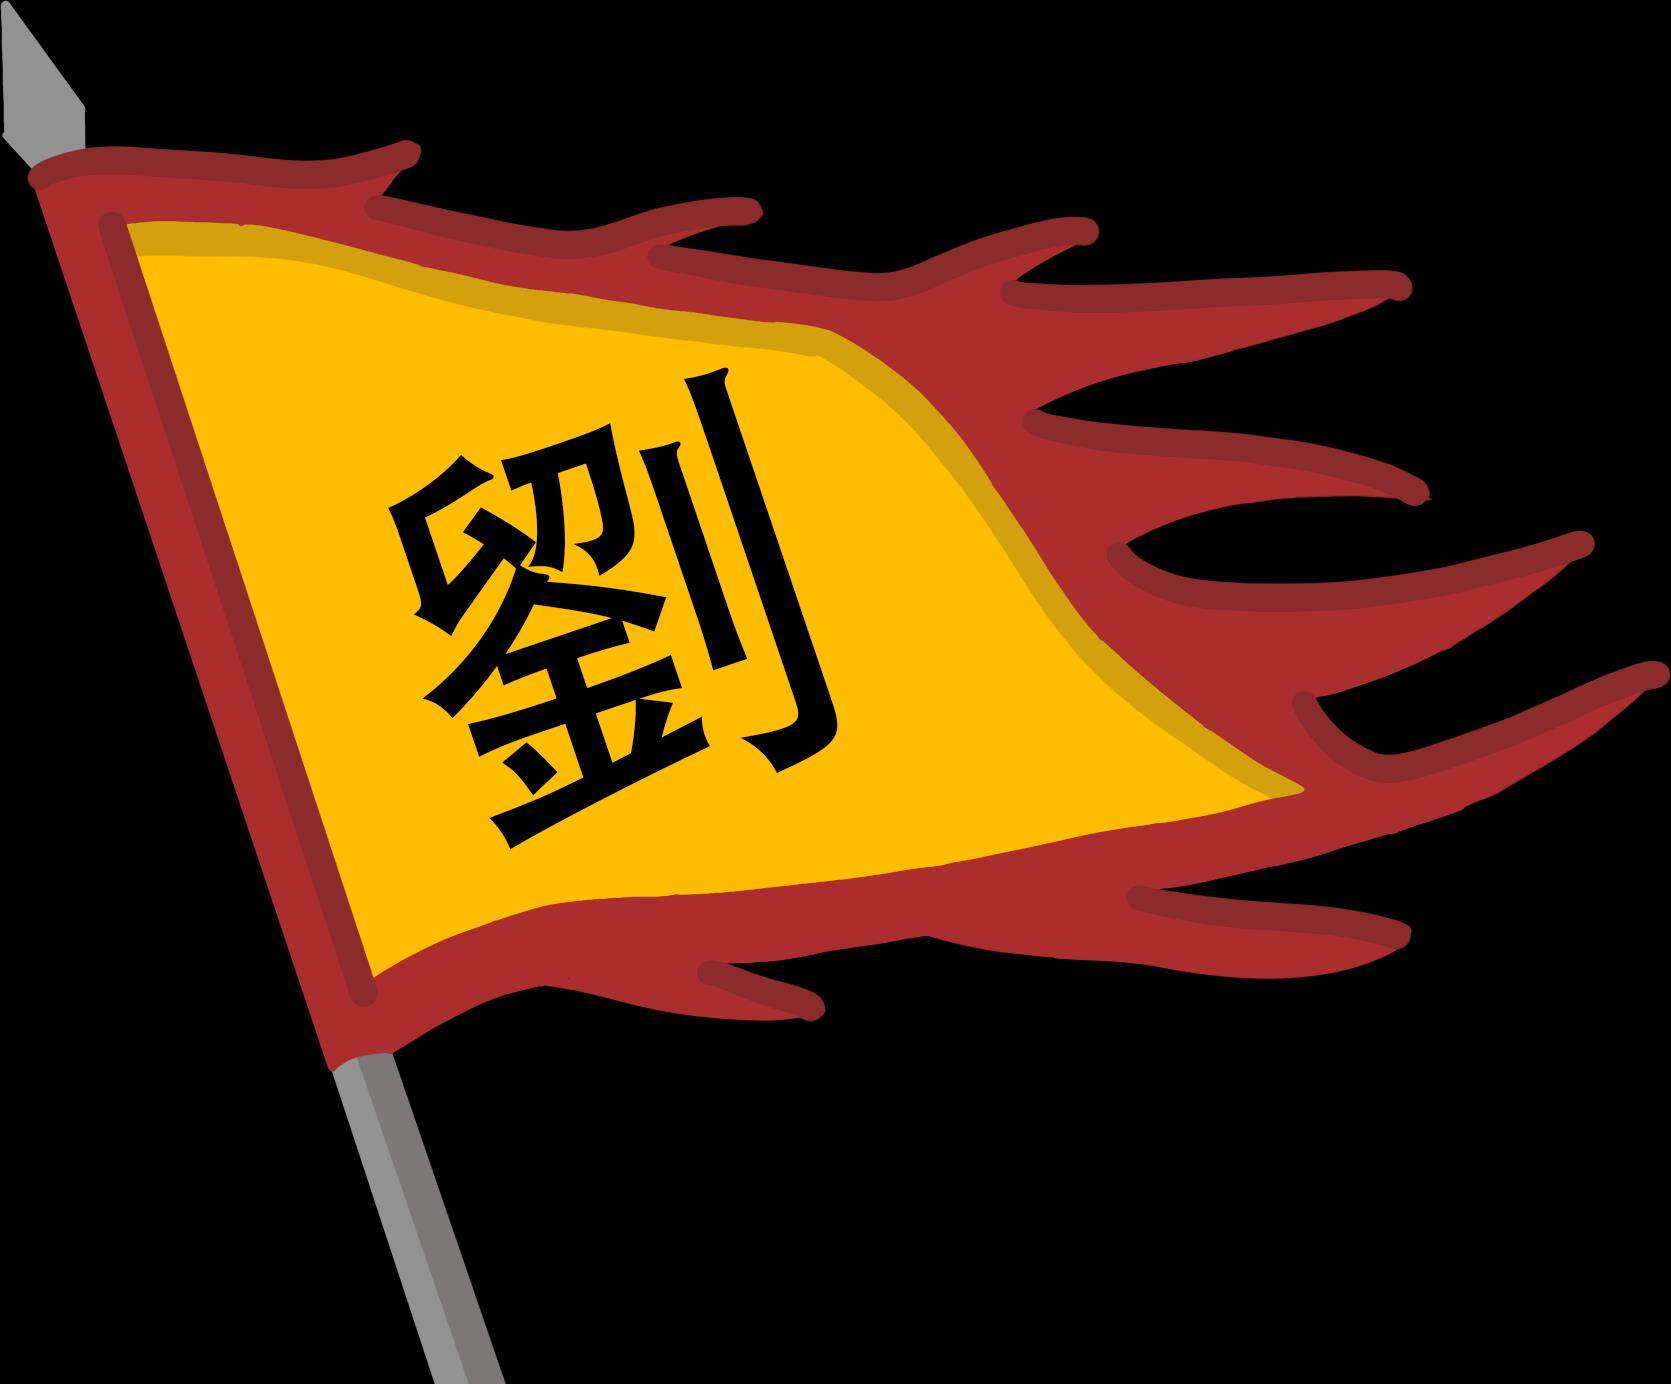 刘汉的大旗在中国大地上飘扬了将近400年西晋武帝司马炎死后,因为司马